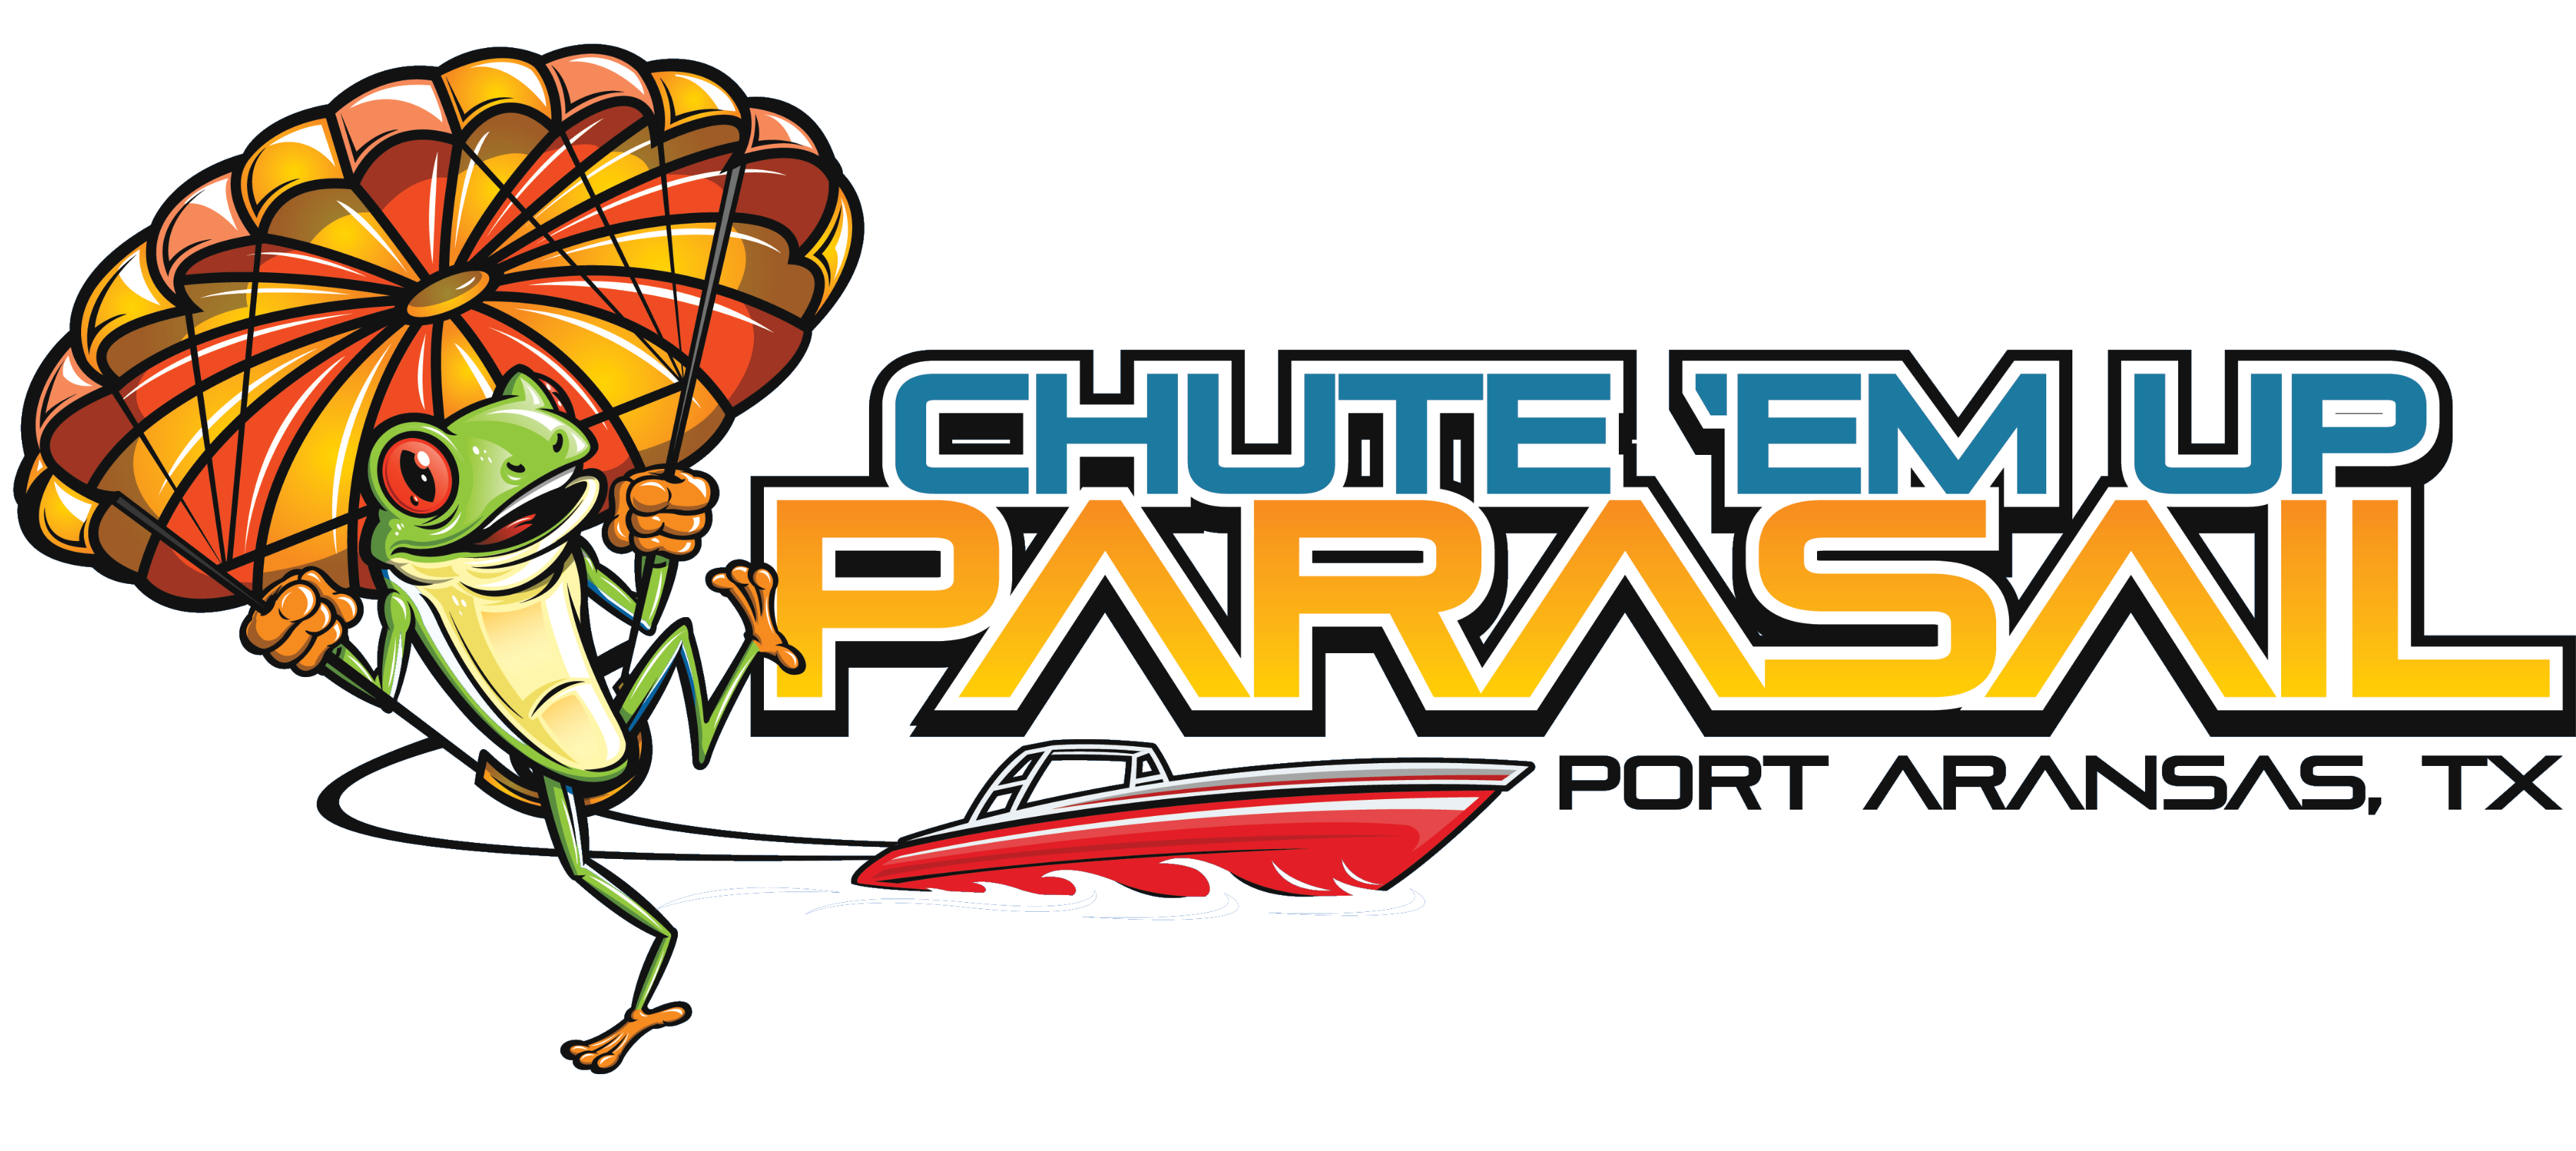 Chute 'Em Up - Port A Parasail Logo